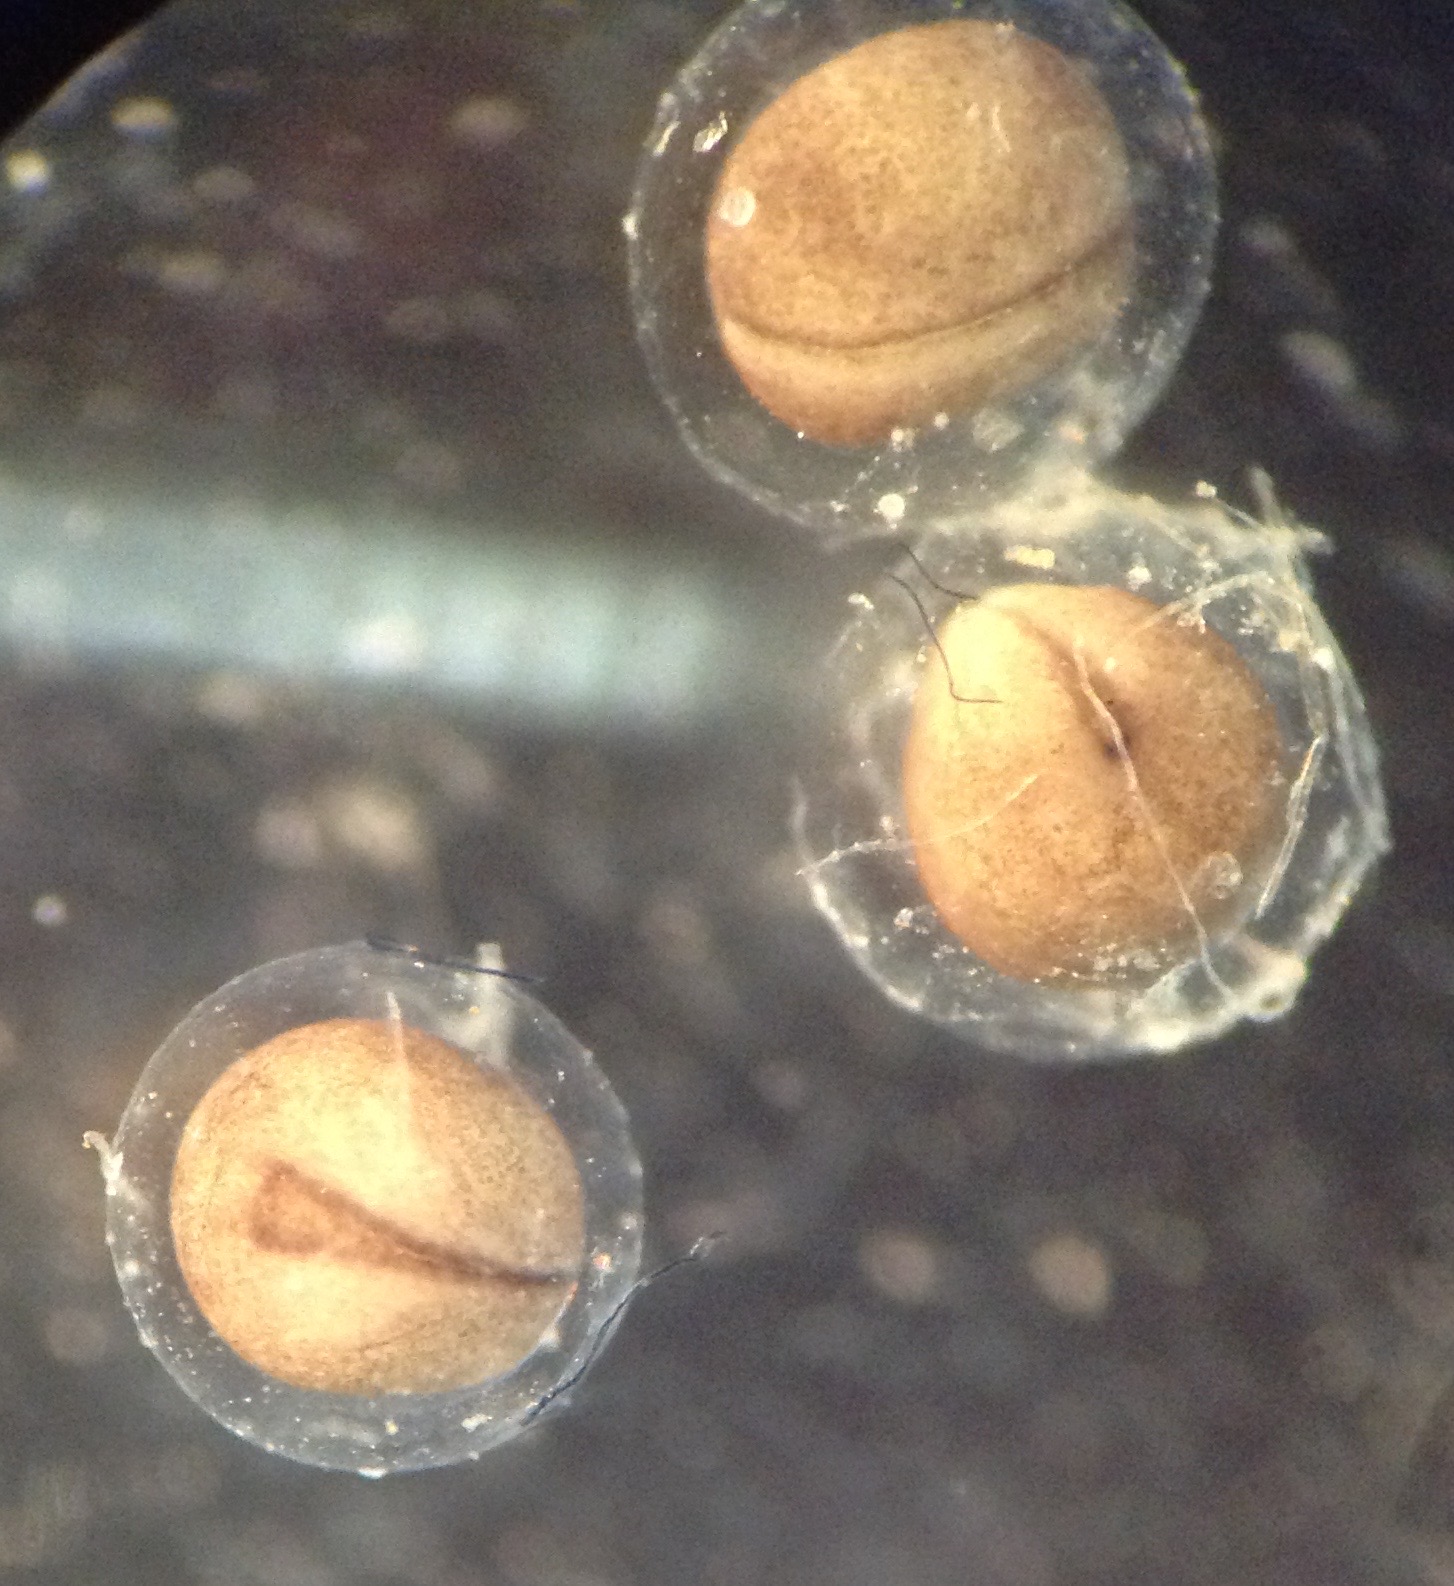 3 blastula embryos